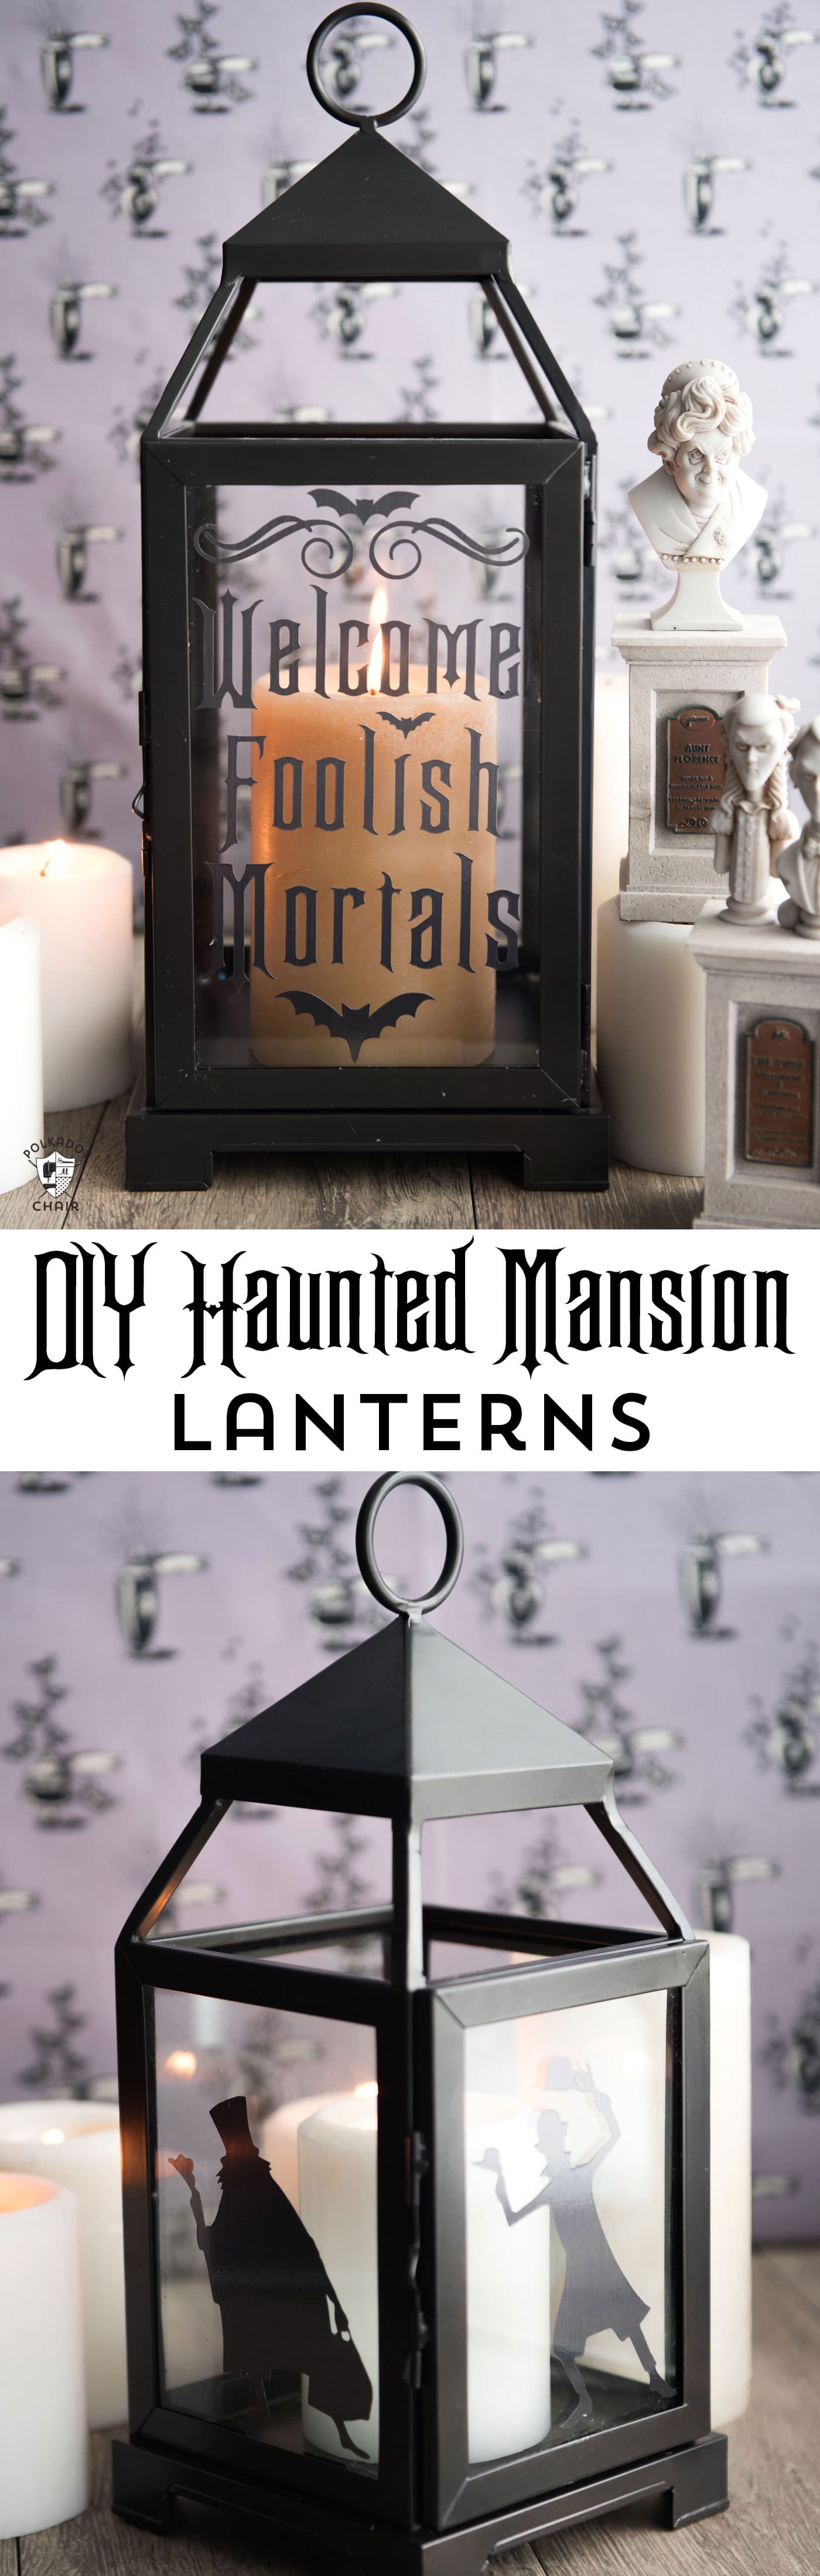 Idées de décoration d'Halloween DIY inspirées du manoir hanté - comment fabriquer de jolies lanternes du manoir hanté. Comprend des fichiers coupés gratuits pour votre Cricut.